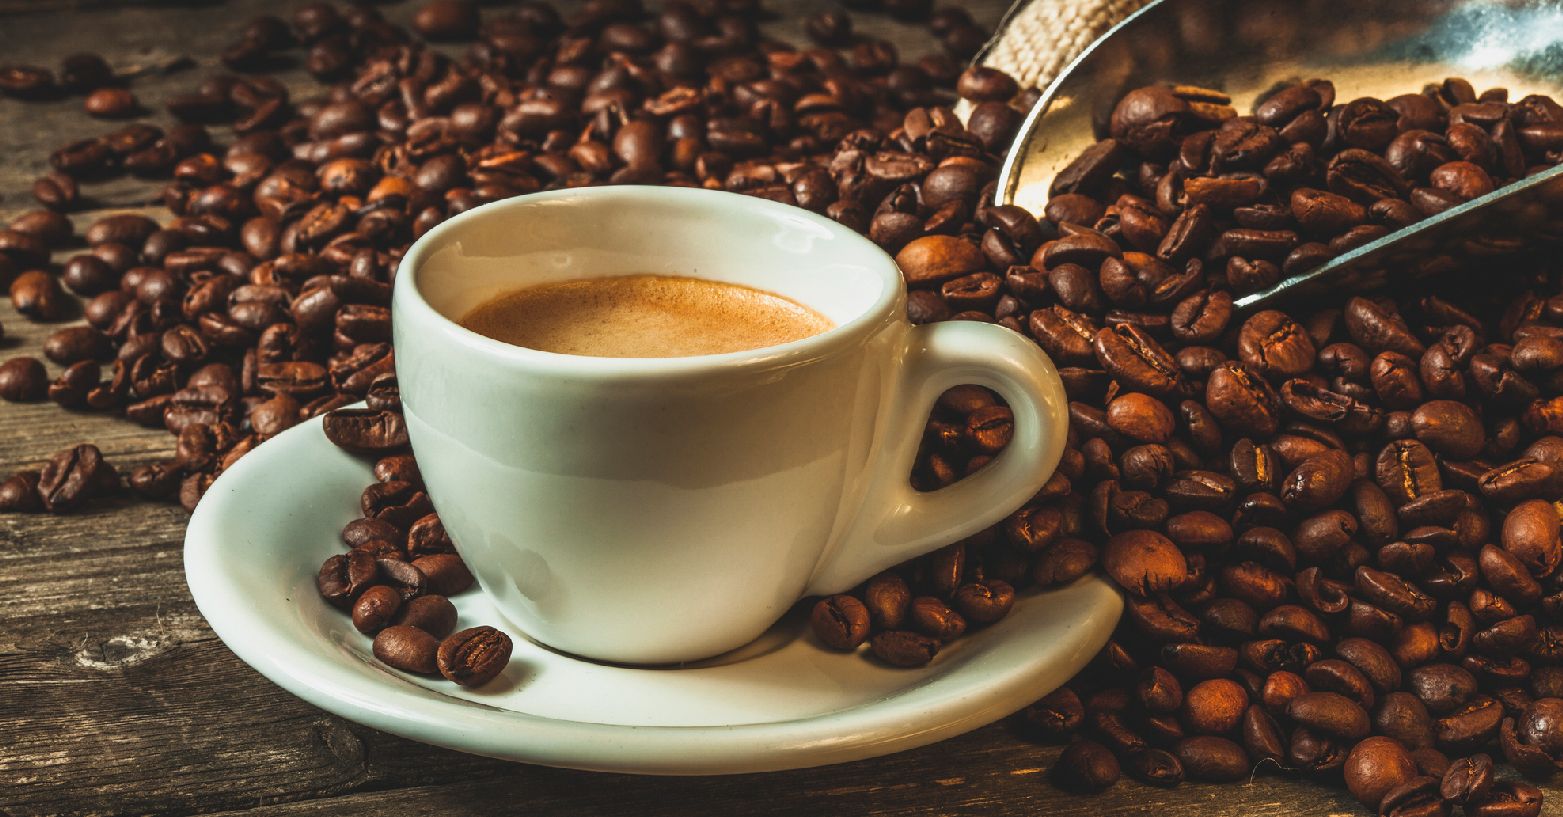 Las exportaciones de café de México fueron de 374 millones de dólares en la primera mitad de 2022. Mexico's coffee exports were US$374 million in the first half of 2022.